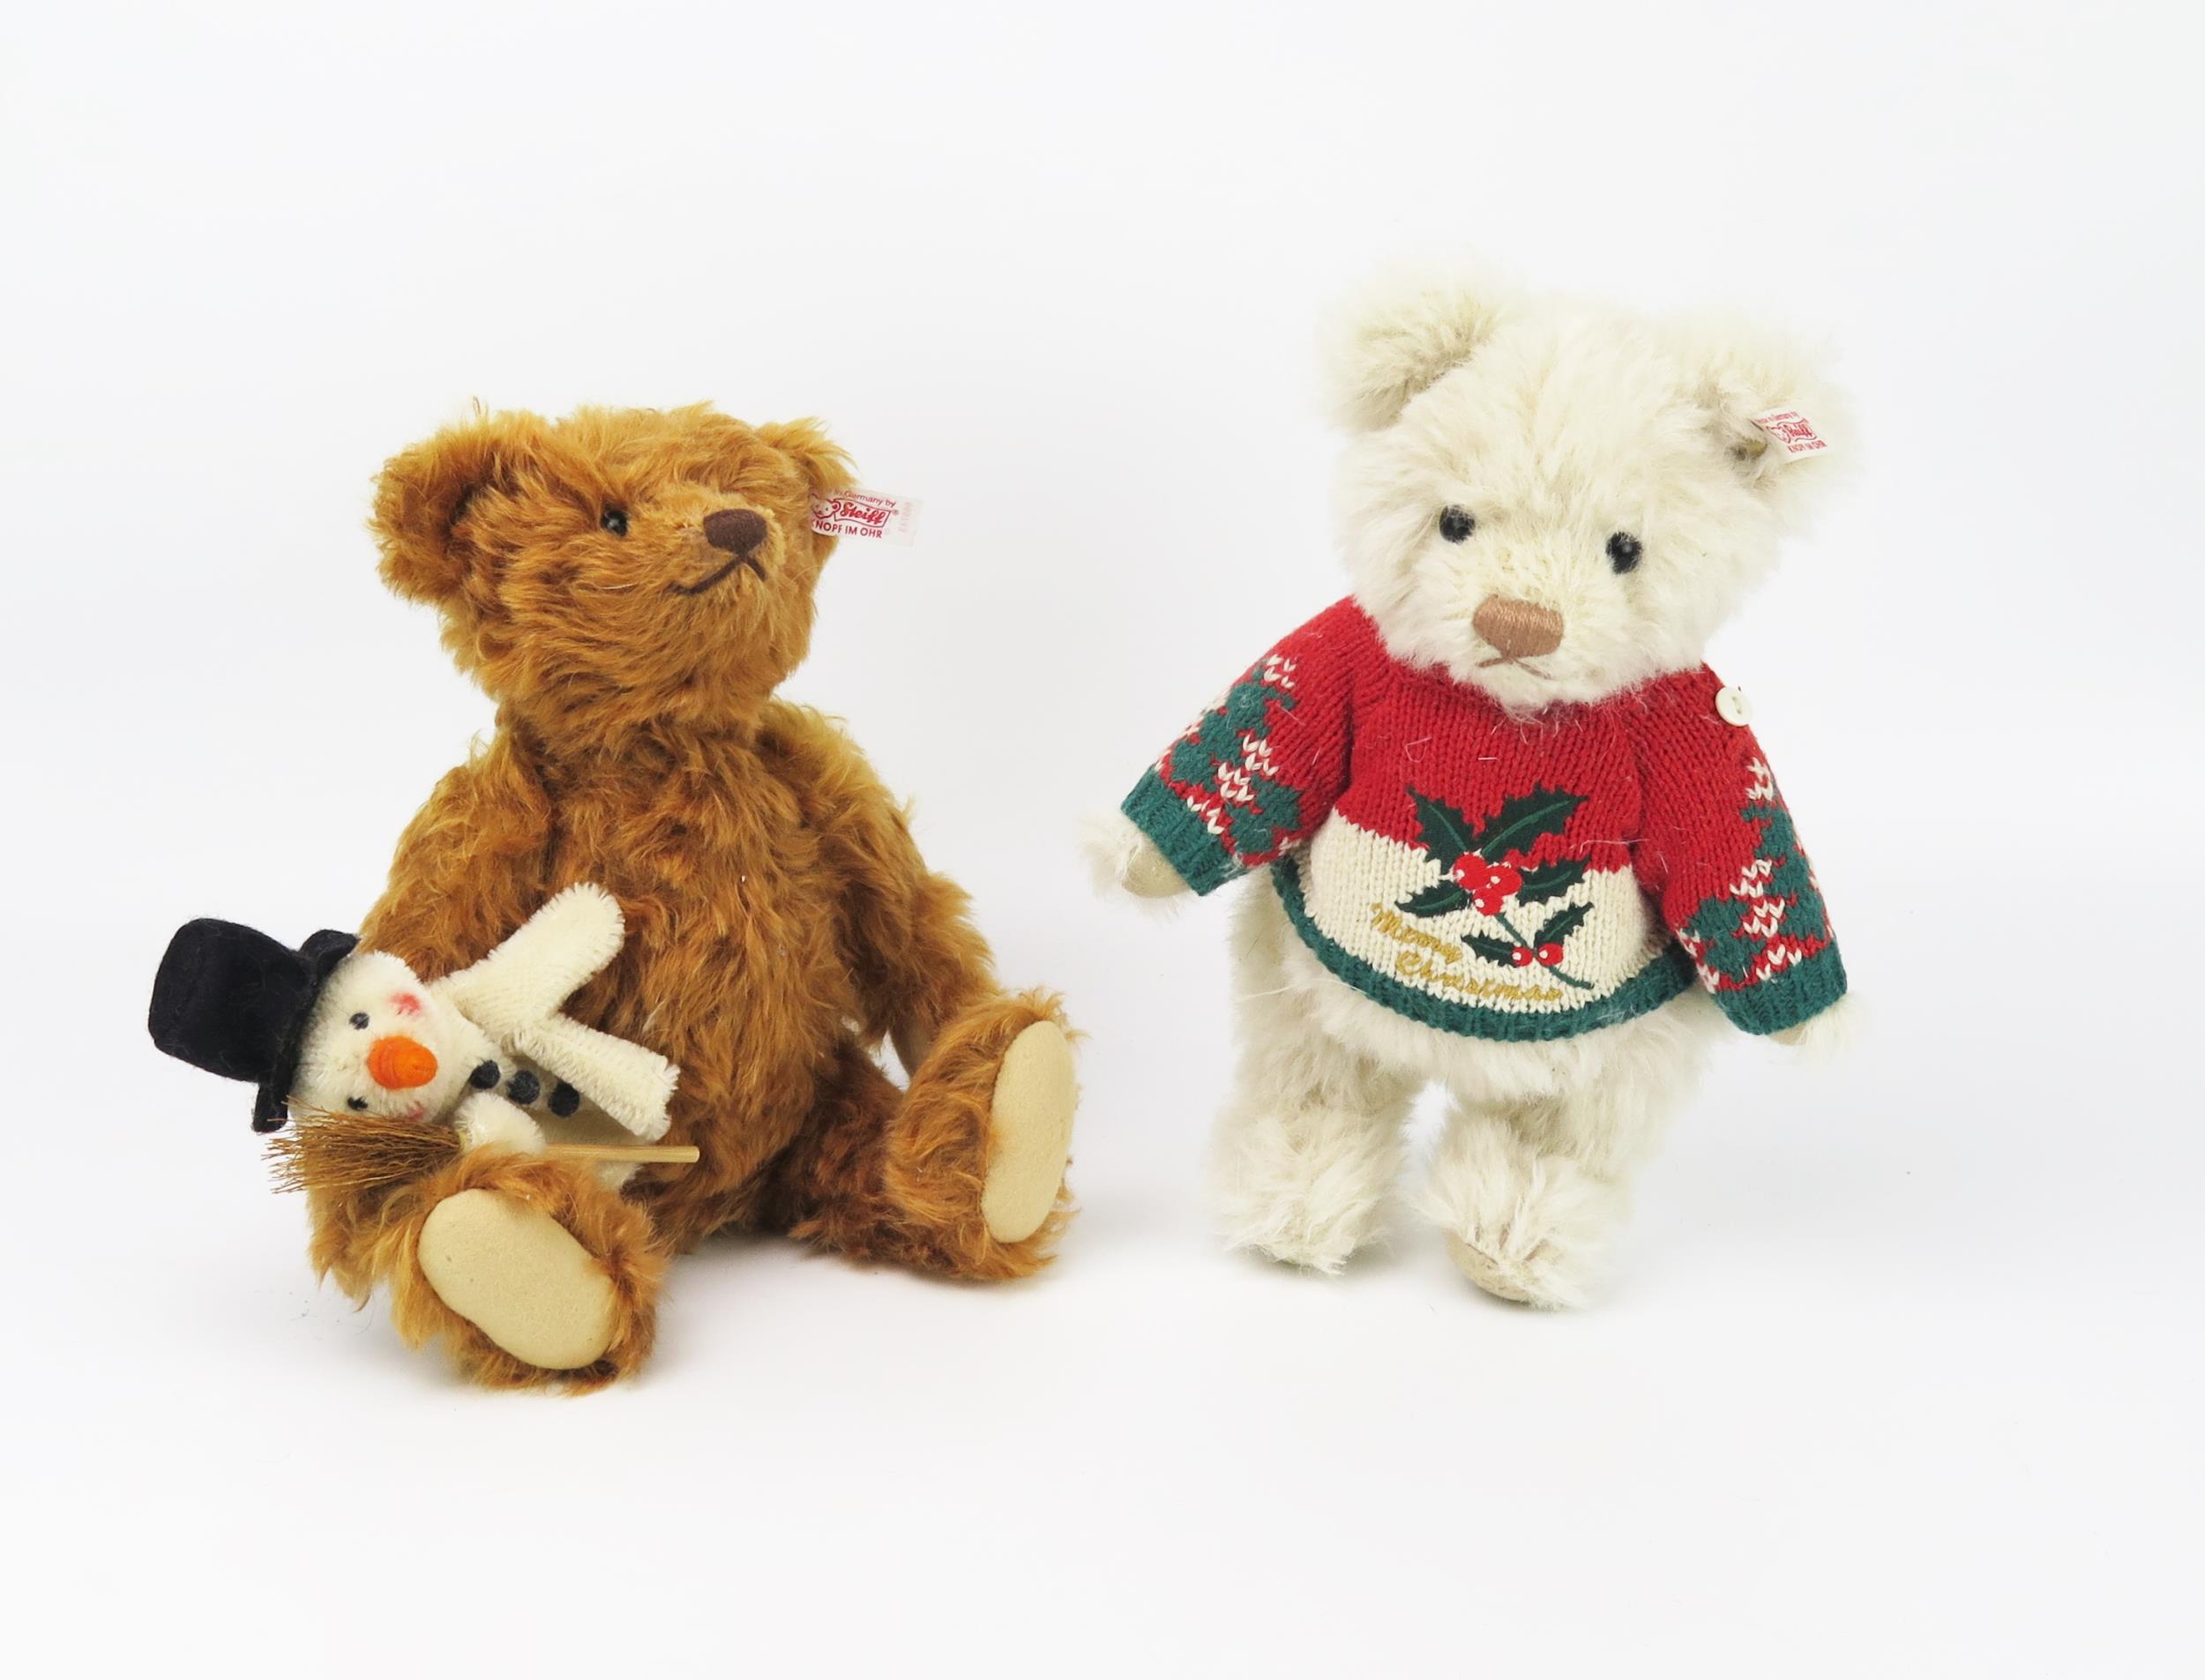 Steiff Teddy Bear Christmas Limited Edition Pair - (1) light brown bear with Frosty the Snowman